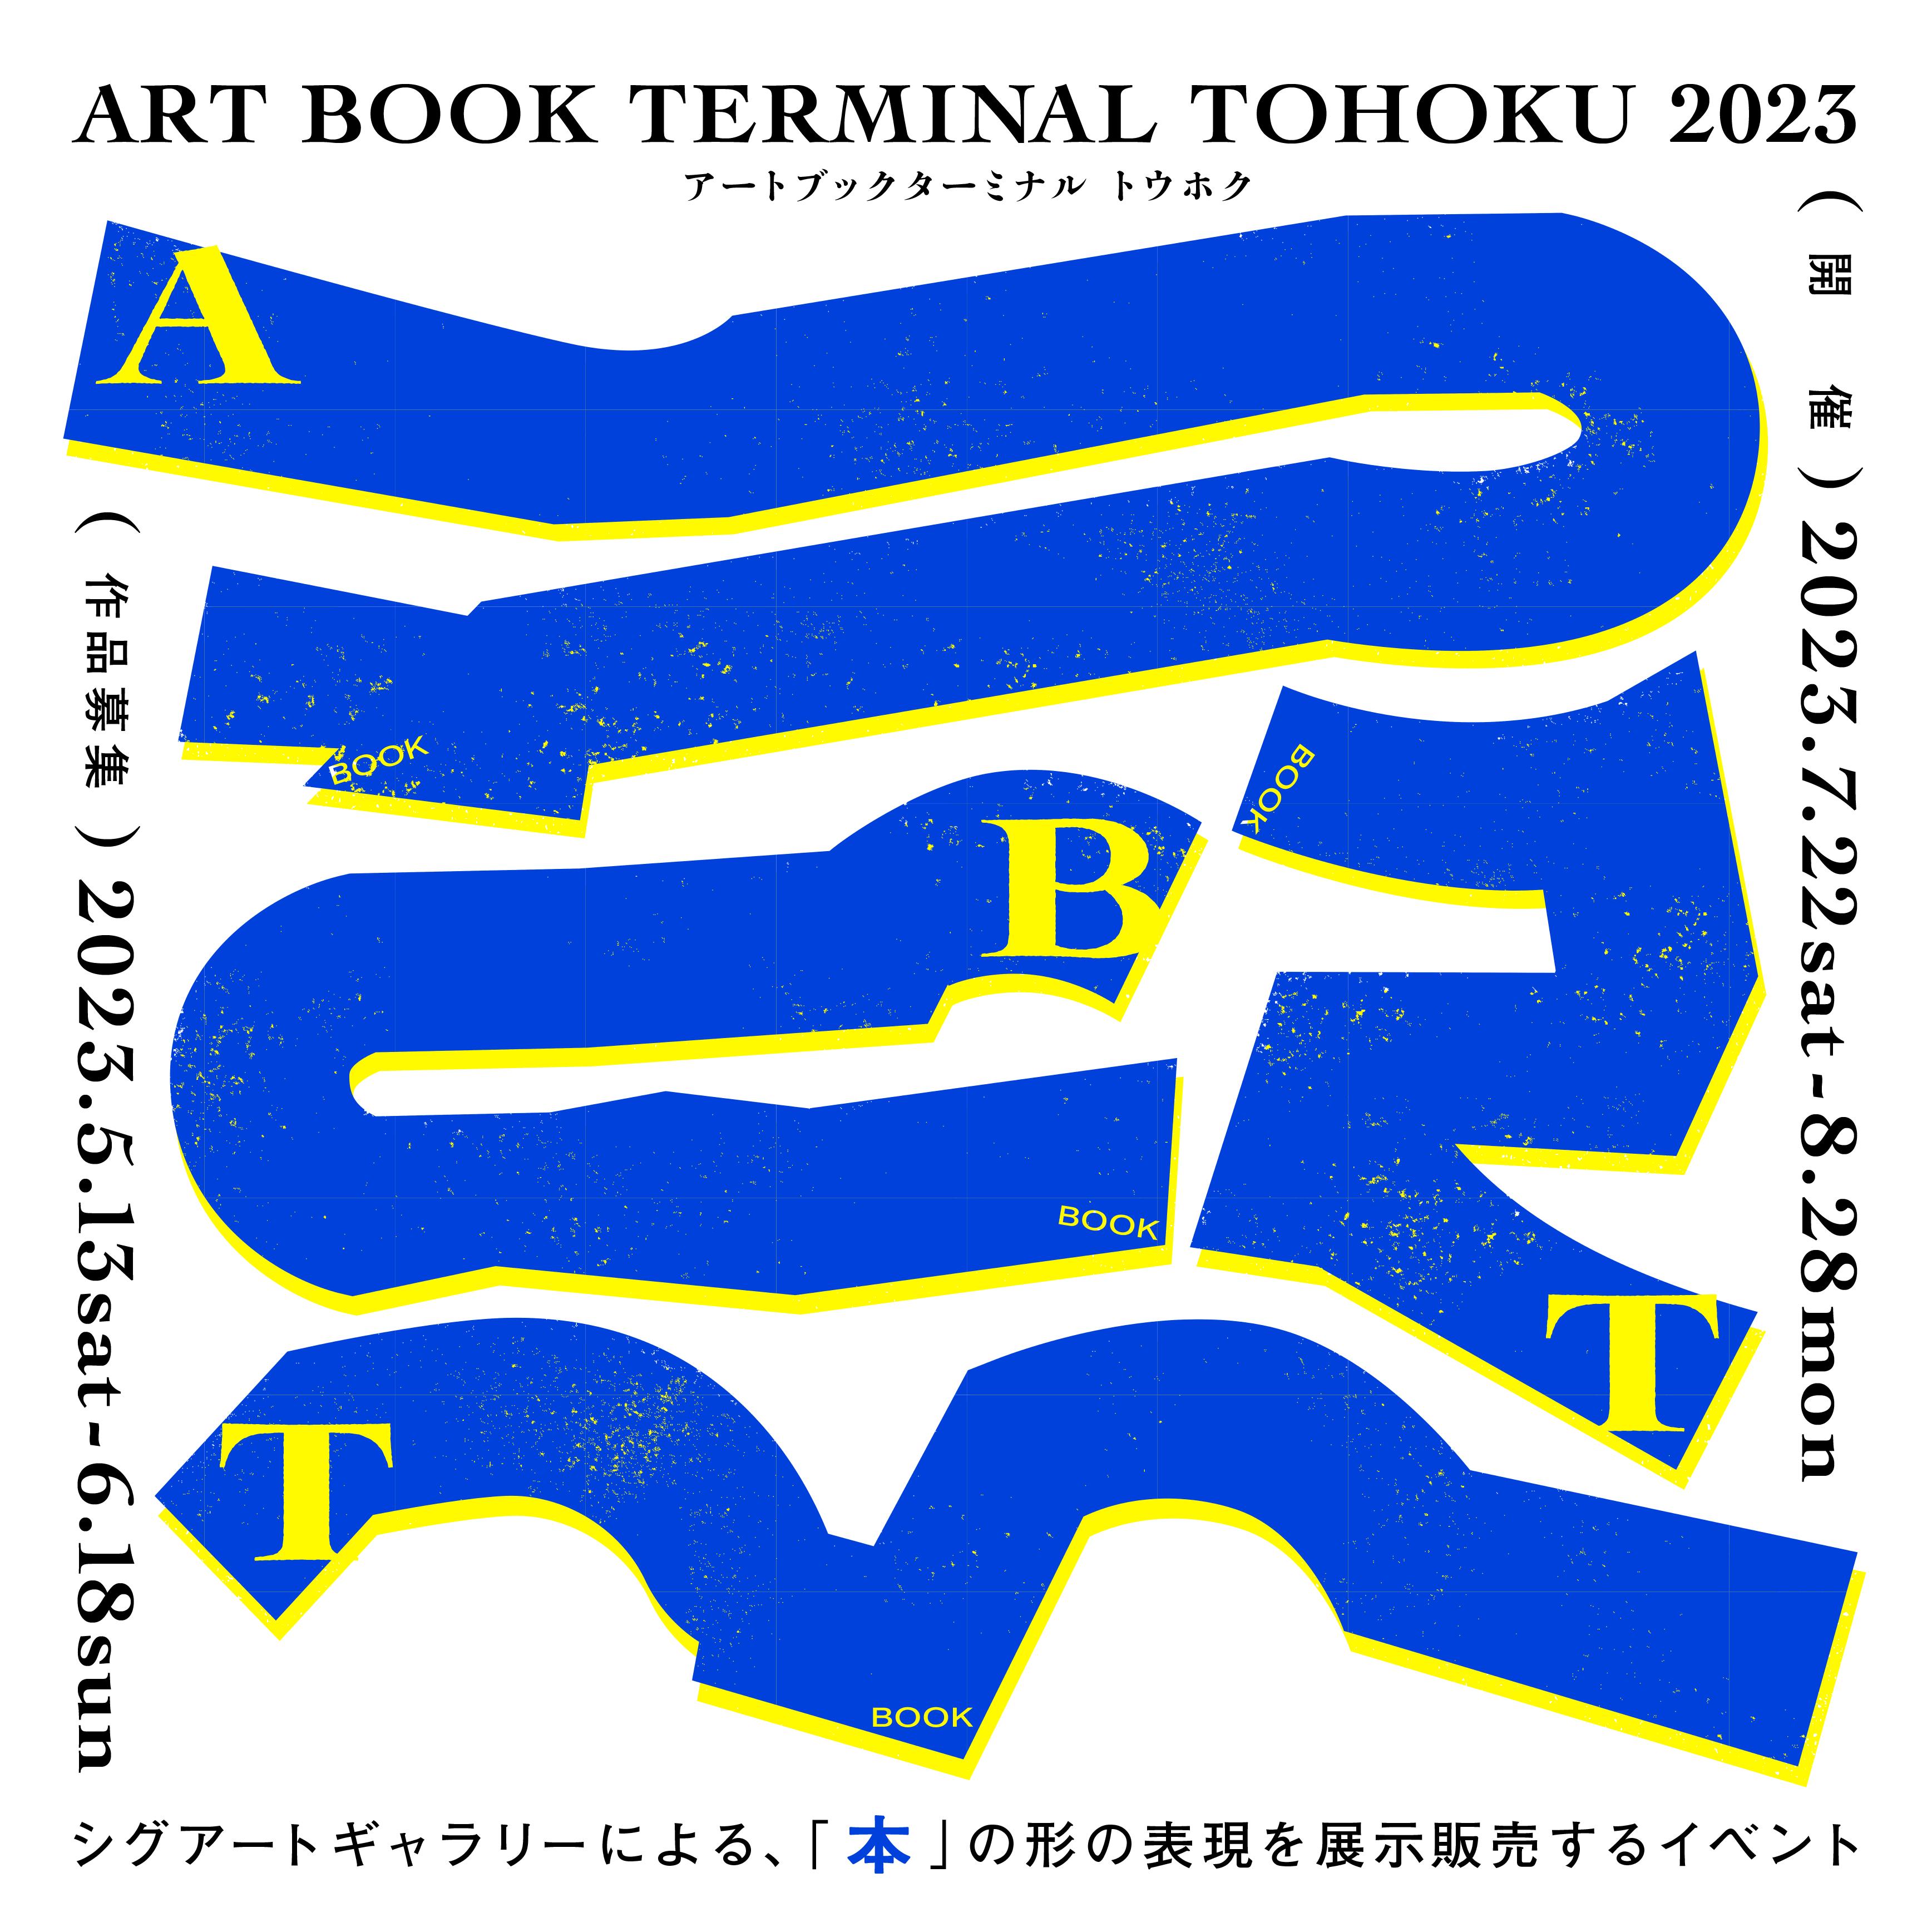 ART BOOK TERMINAL TOHOKU 2023